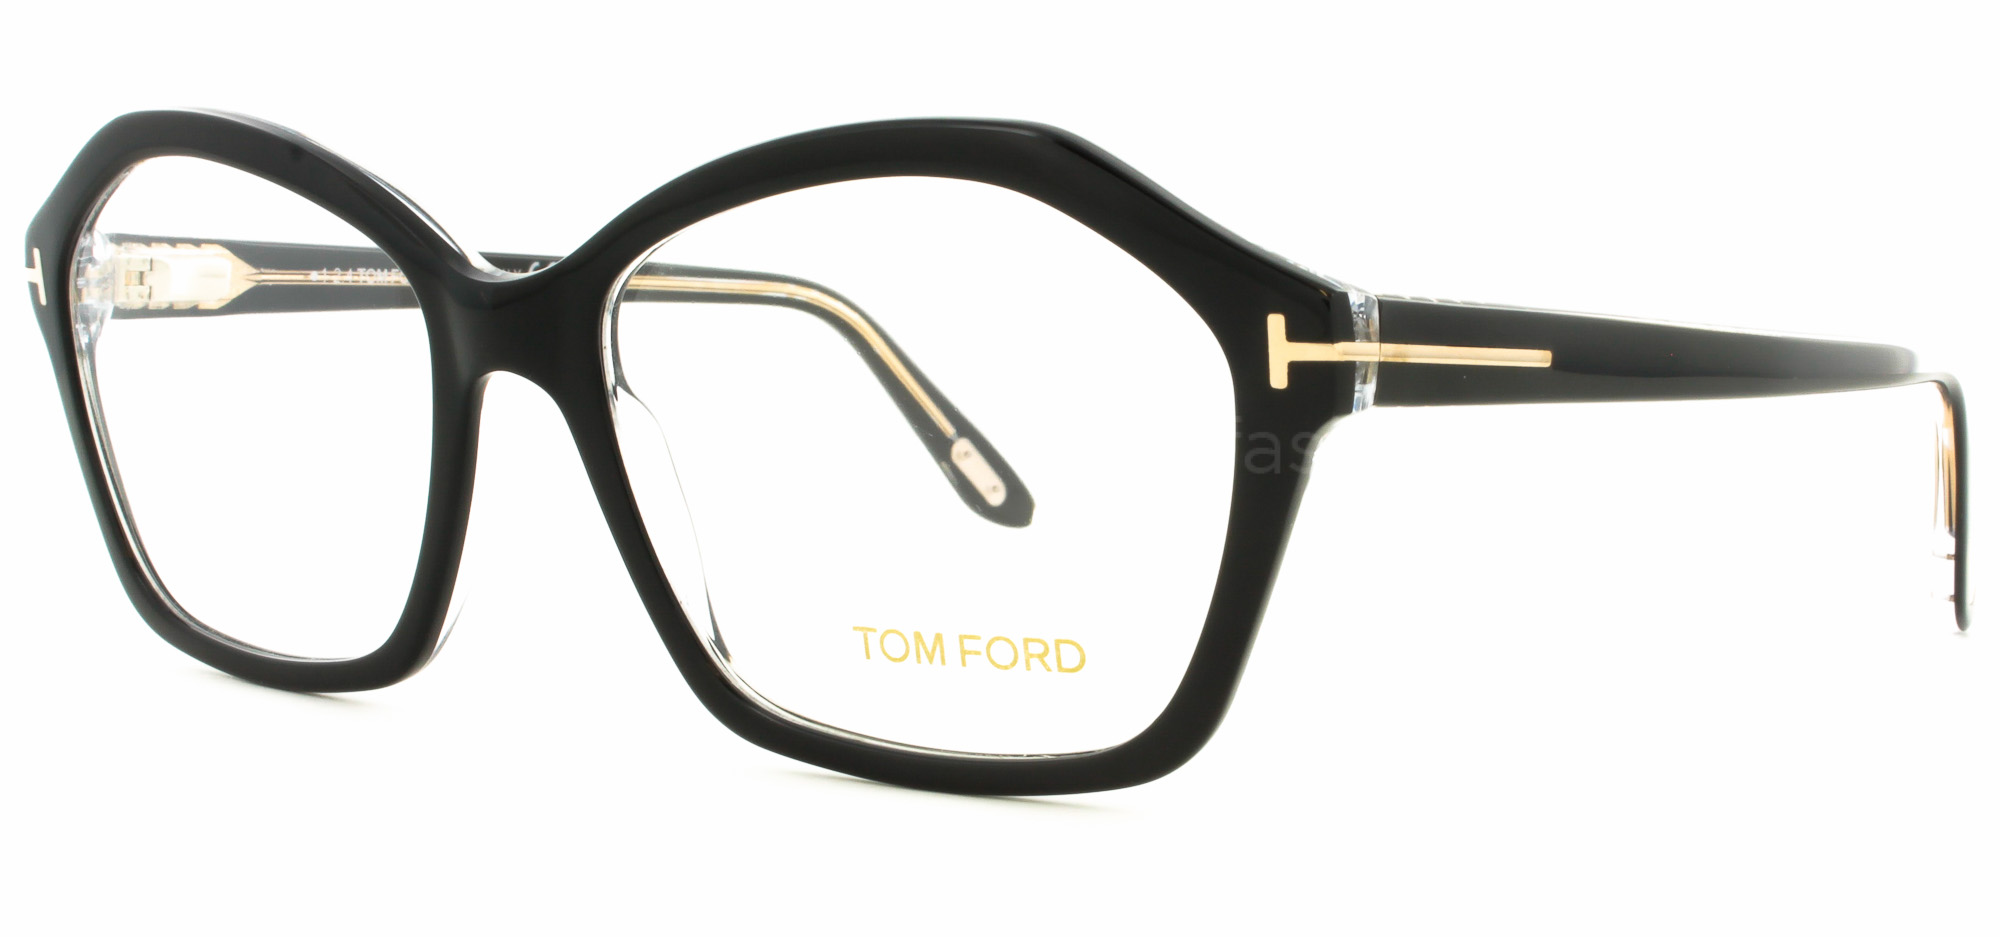 TOM FORD 5361